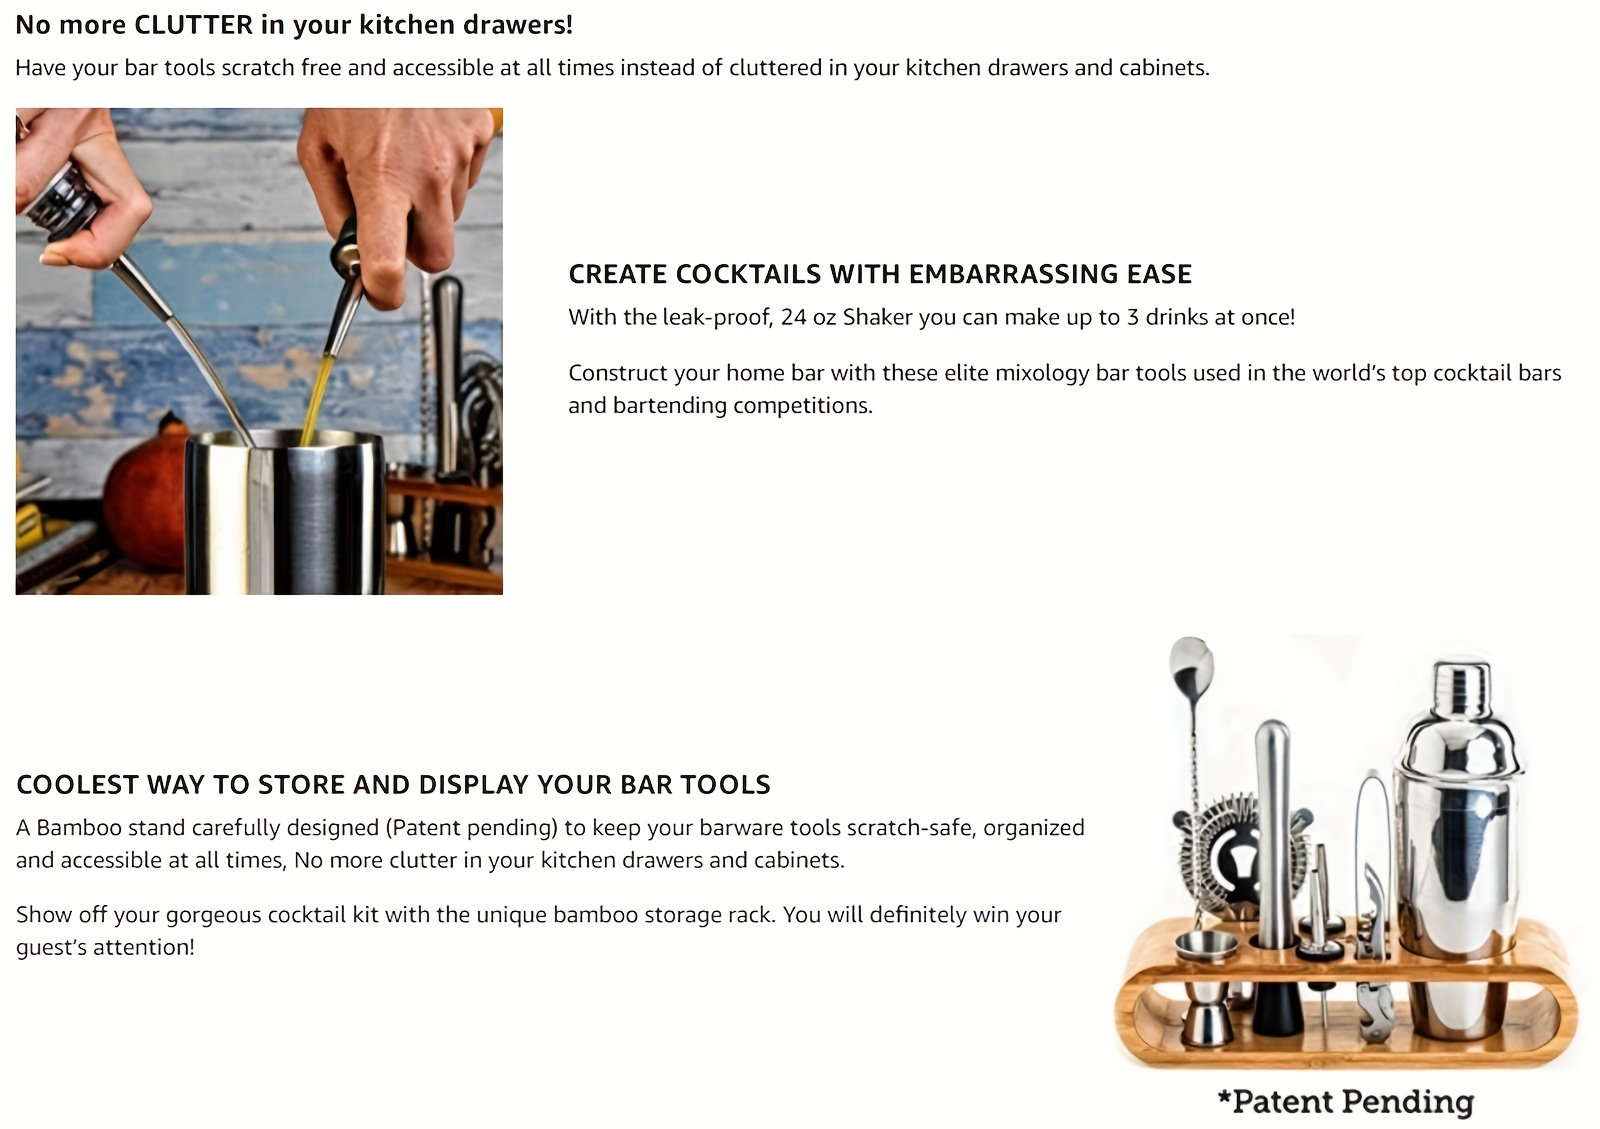 10-teiliges Bar-Tool-Set mit Bambus-Ständer - Home Bartending Kit und  Martini Cocktail Shaker Set kompatibel mit einem fantastischen  Getränke-Mixing-Erlebnis